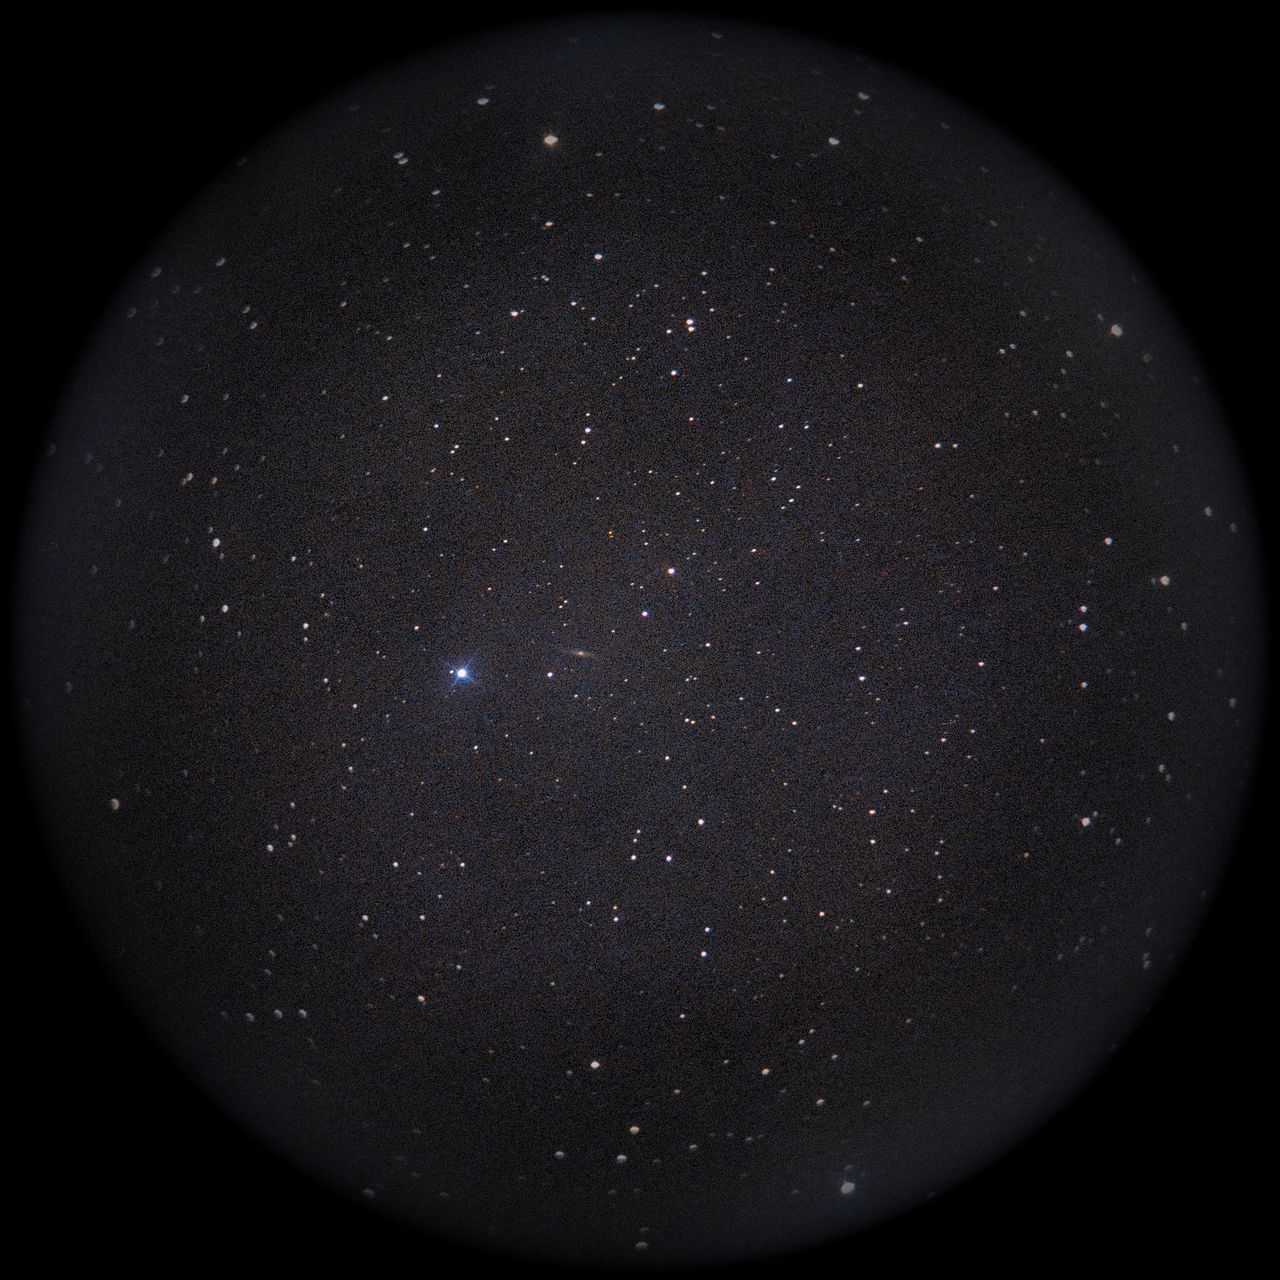 Image of NGC2424